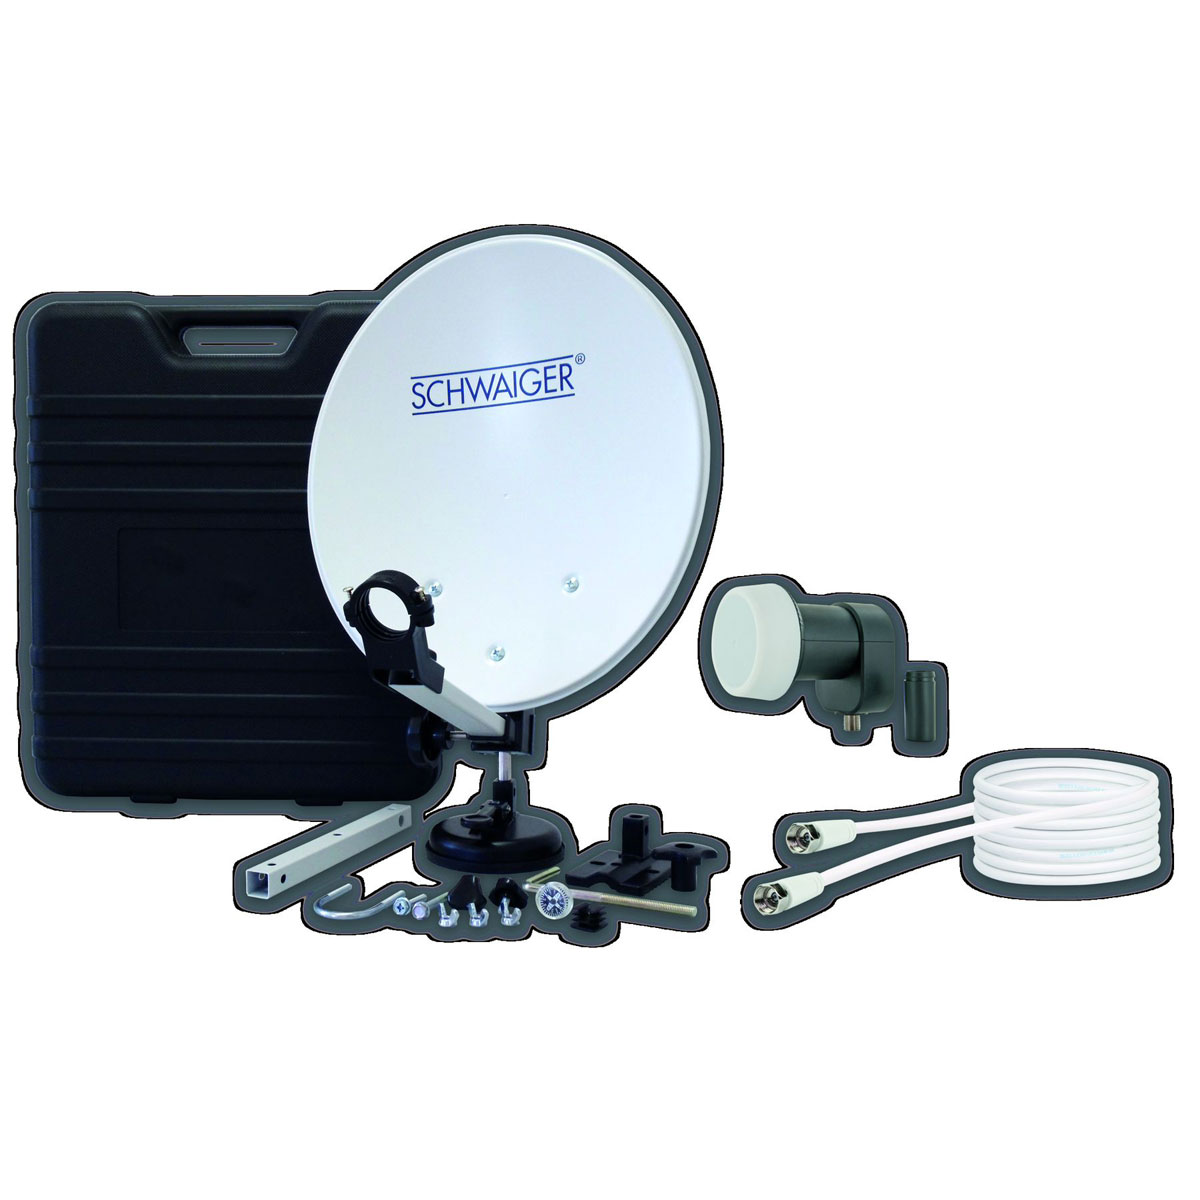 Mobiles-Satellitenschüssel-Set, mit Koffer, 4-teilig